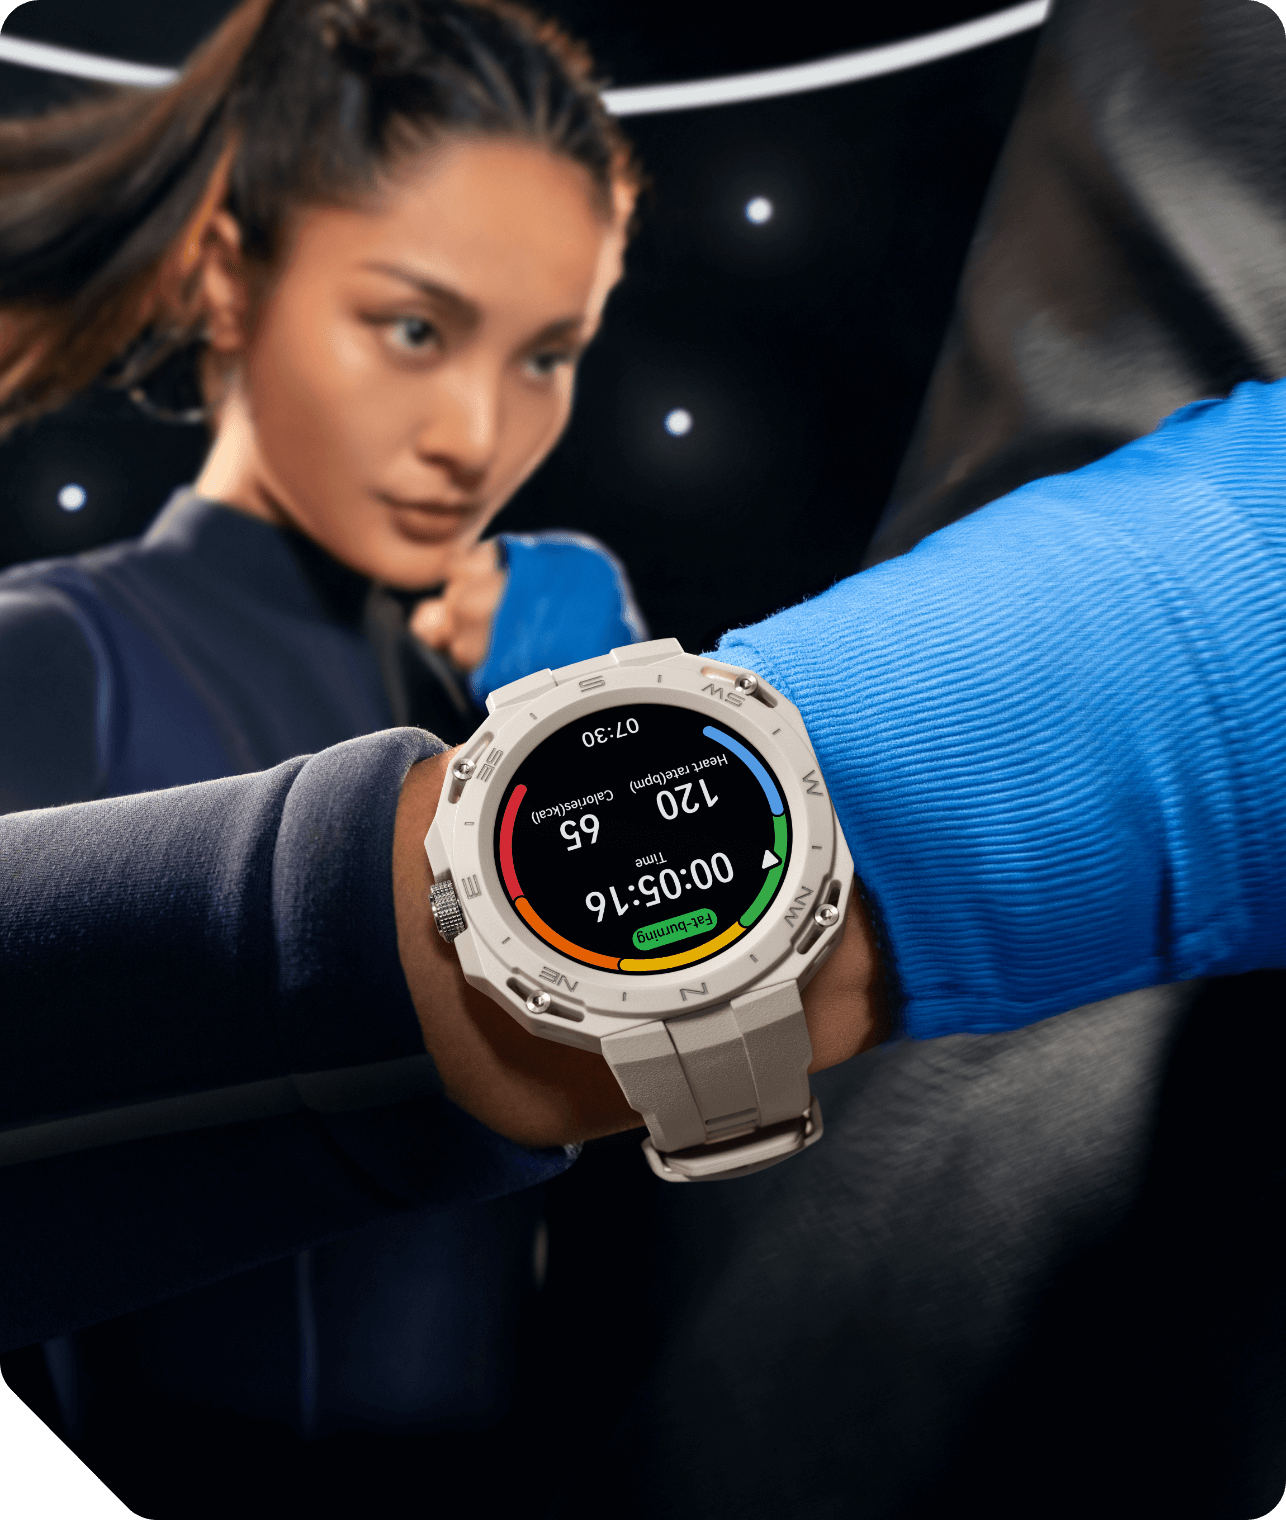 Smartwatch duro y resistente: tiene certificación militar y GPS